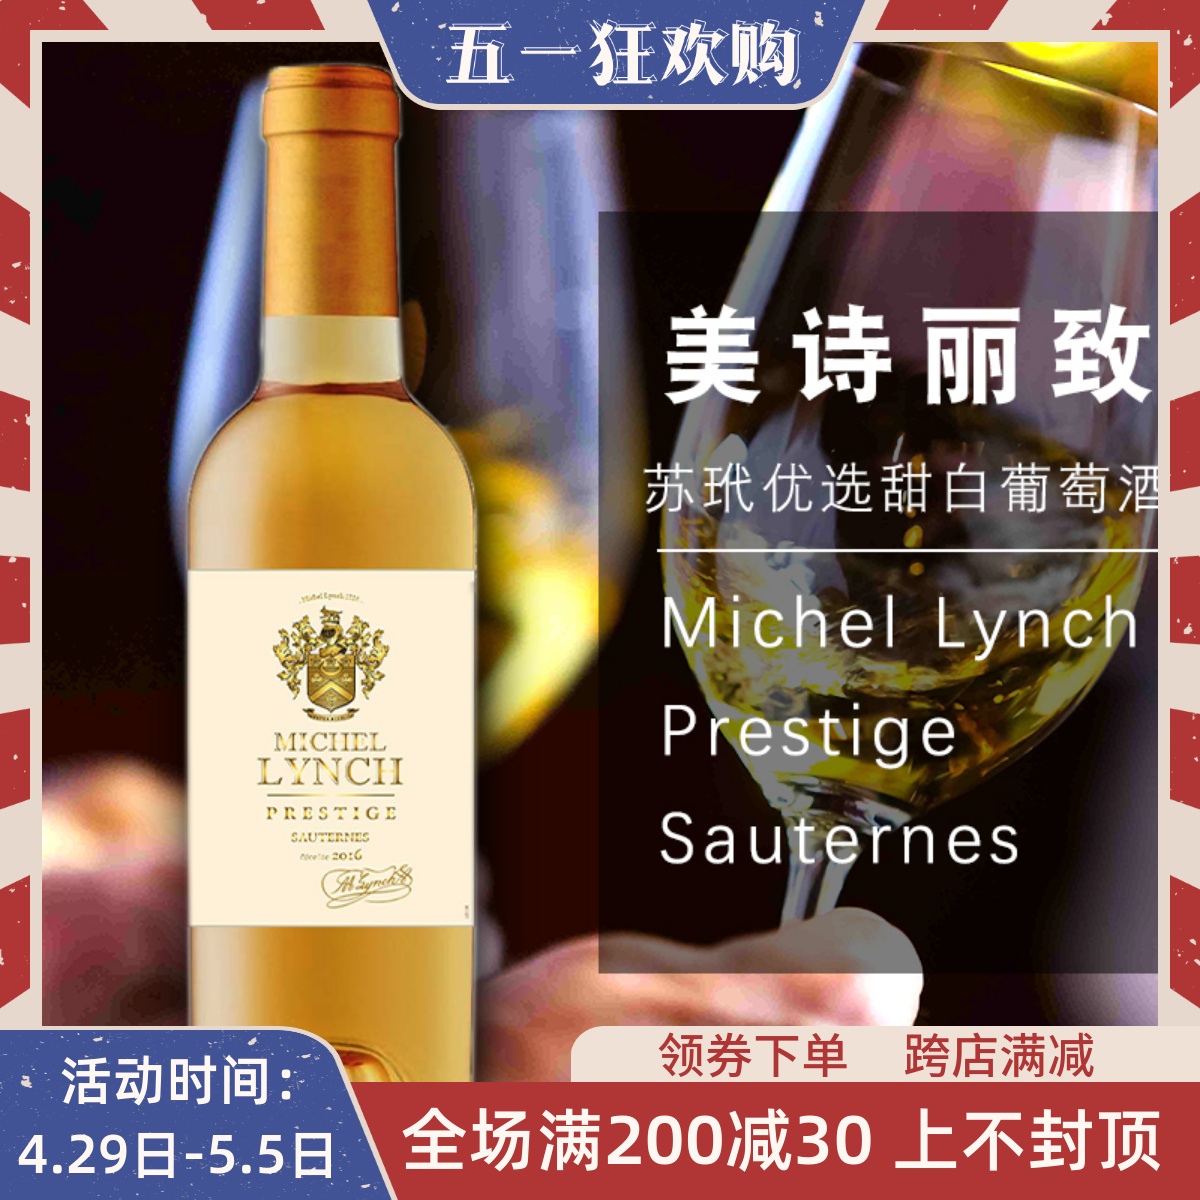 美诗丽致苏玳优选甜白葡萄酒Michel Lynch Sauternes法国贵腐甜白